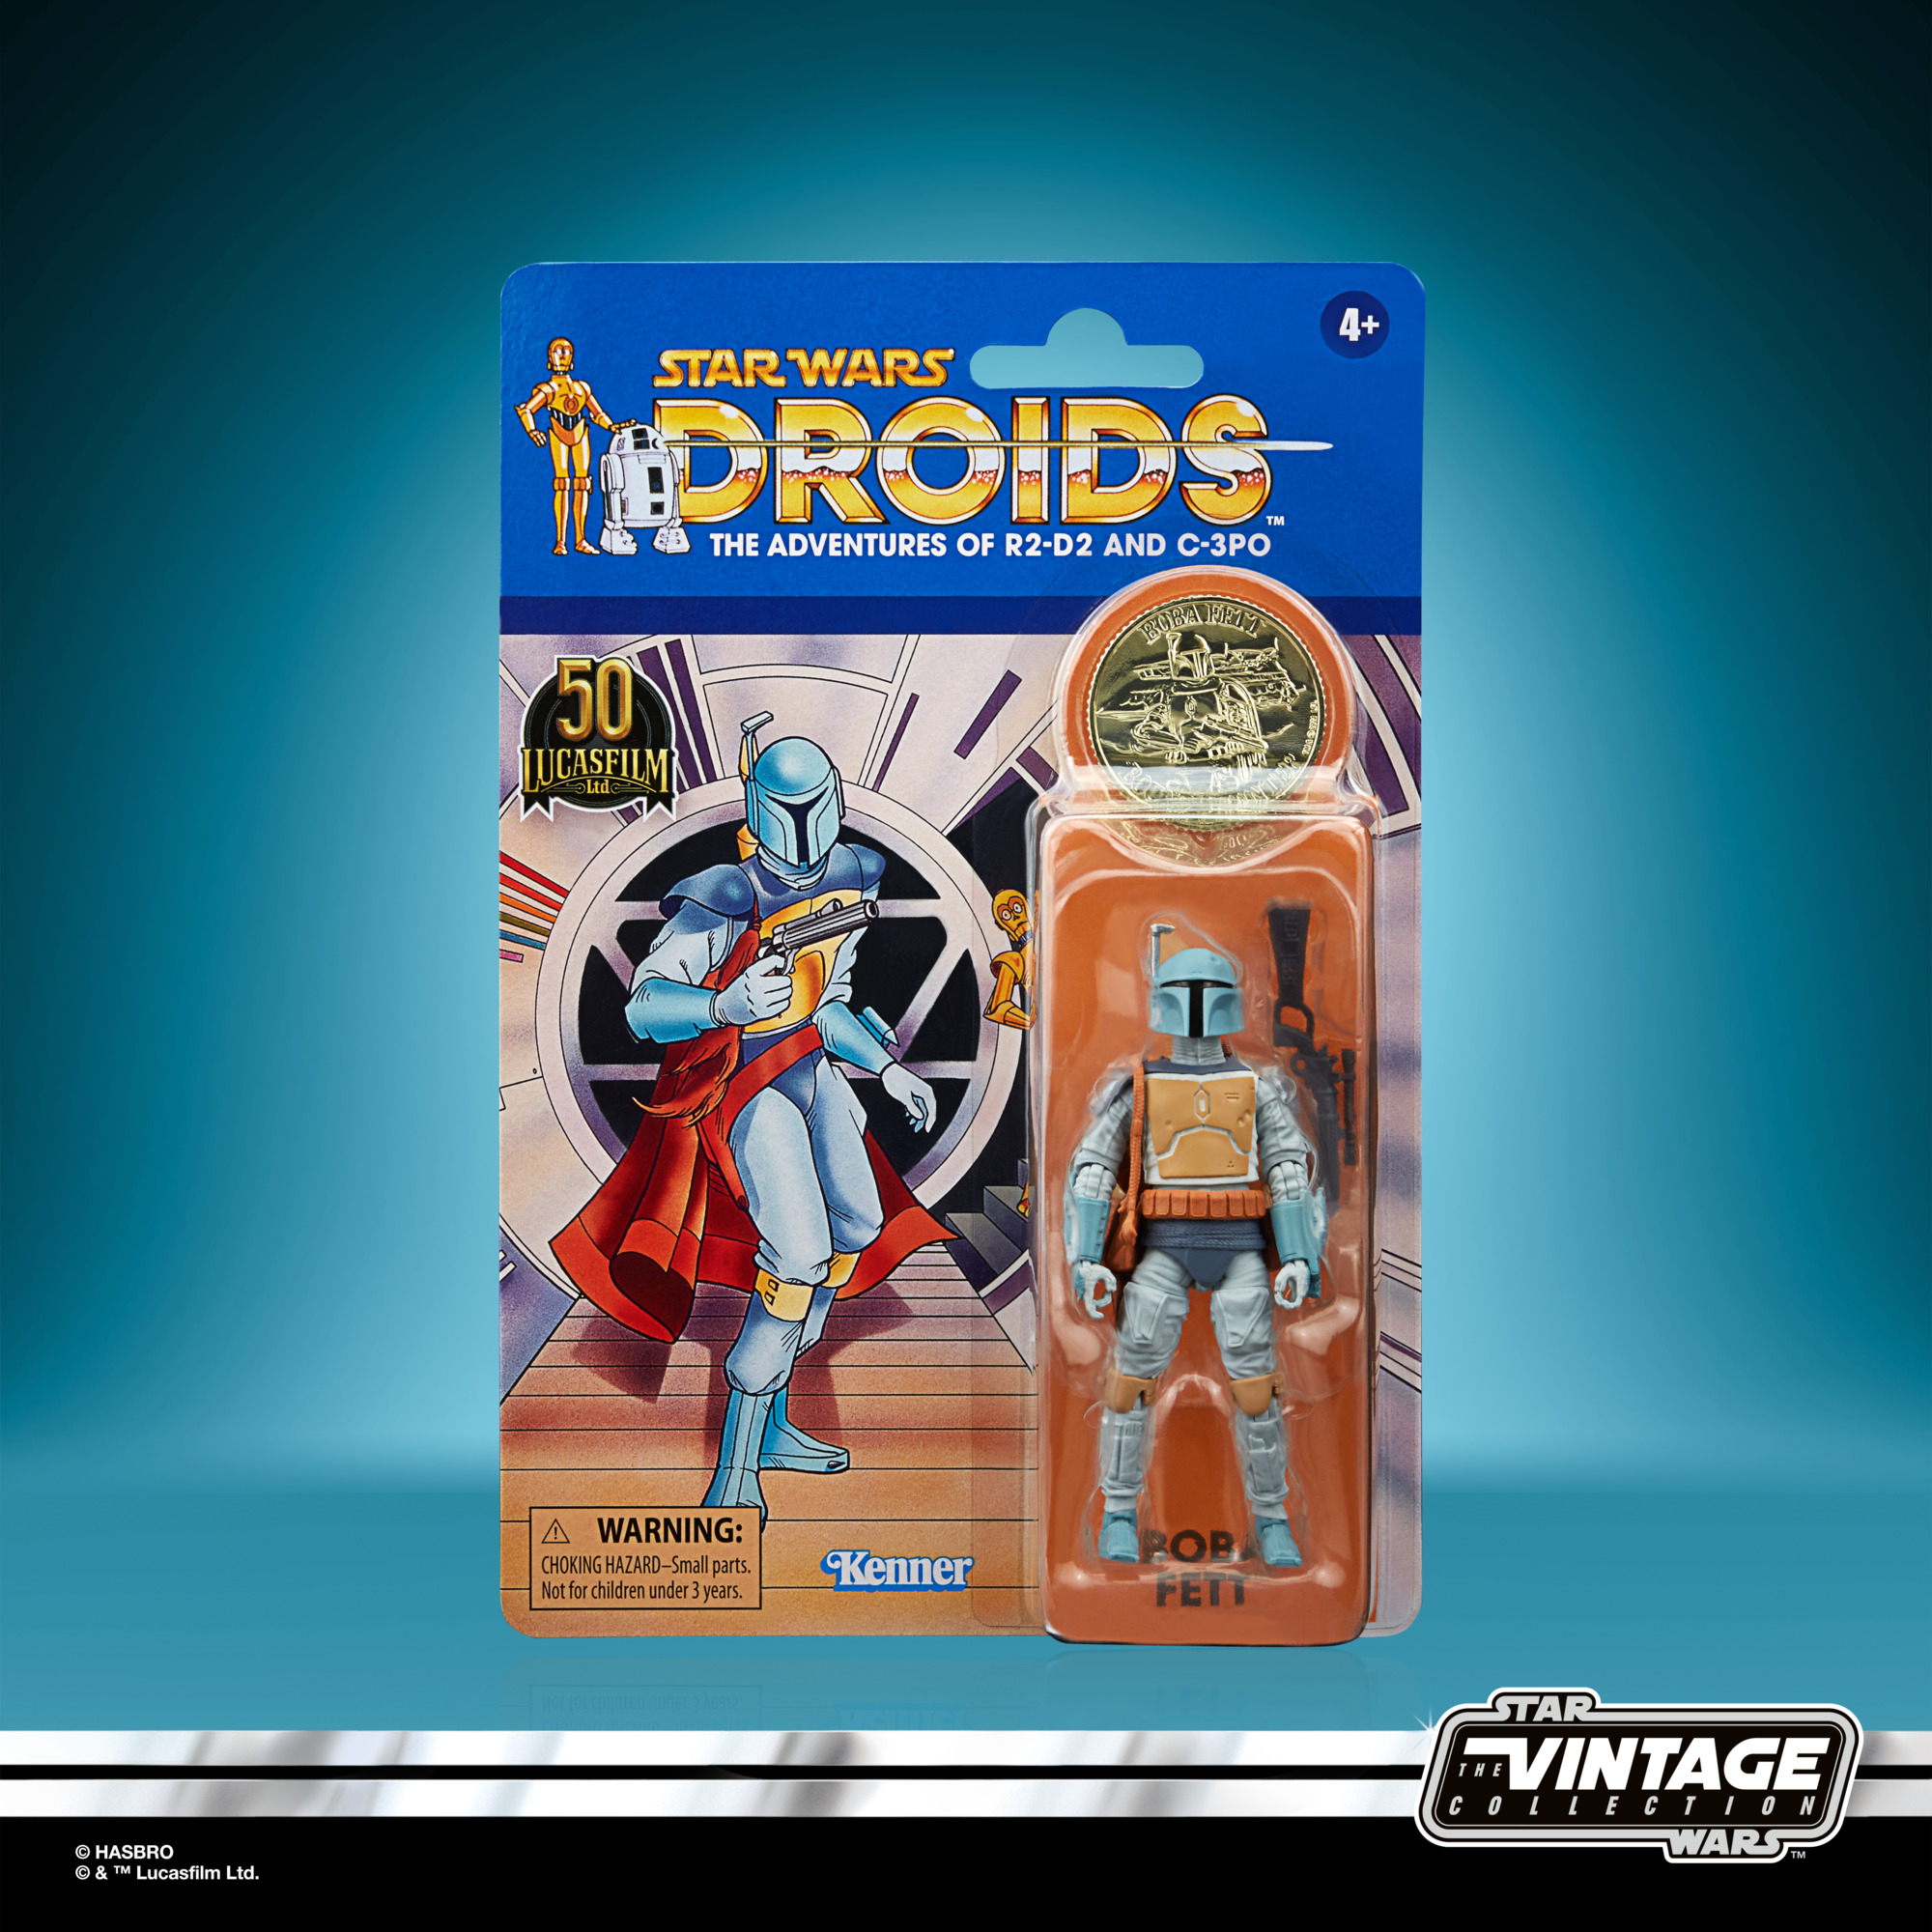 Star Wars: Droids Vintage Collection Actionfigur 2021 Boba Fett 10 cm F53125L00 5010993954063